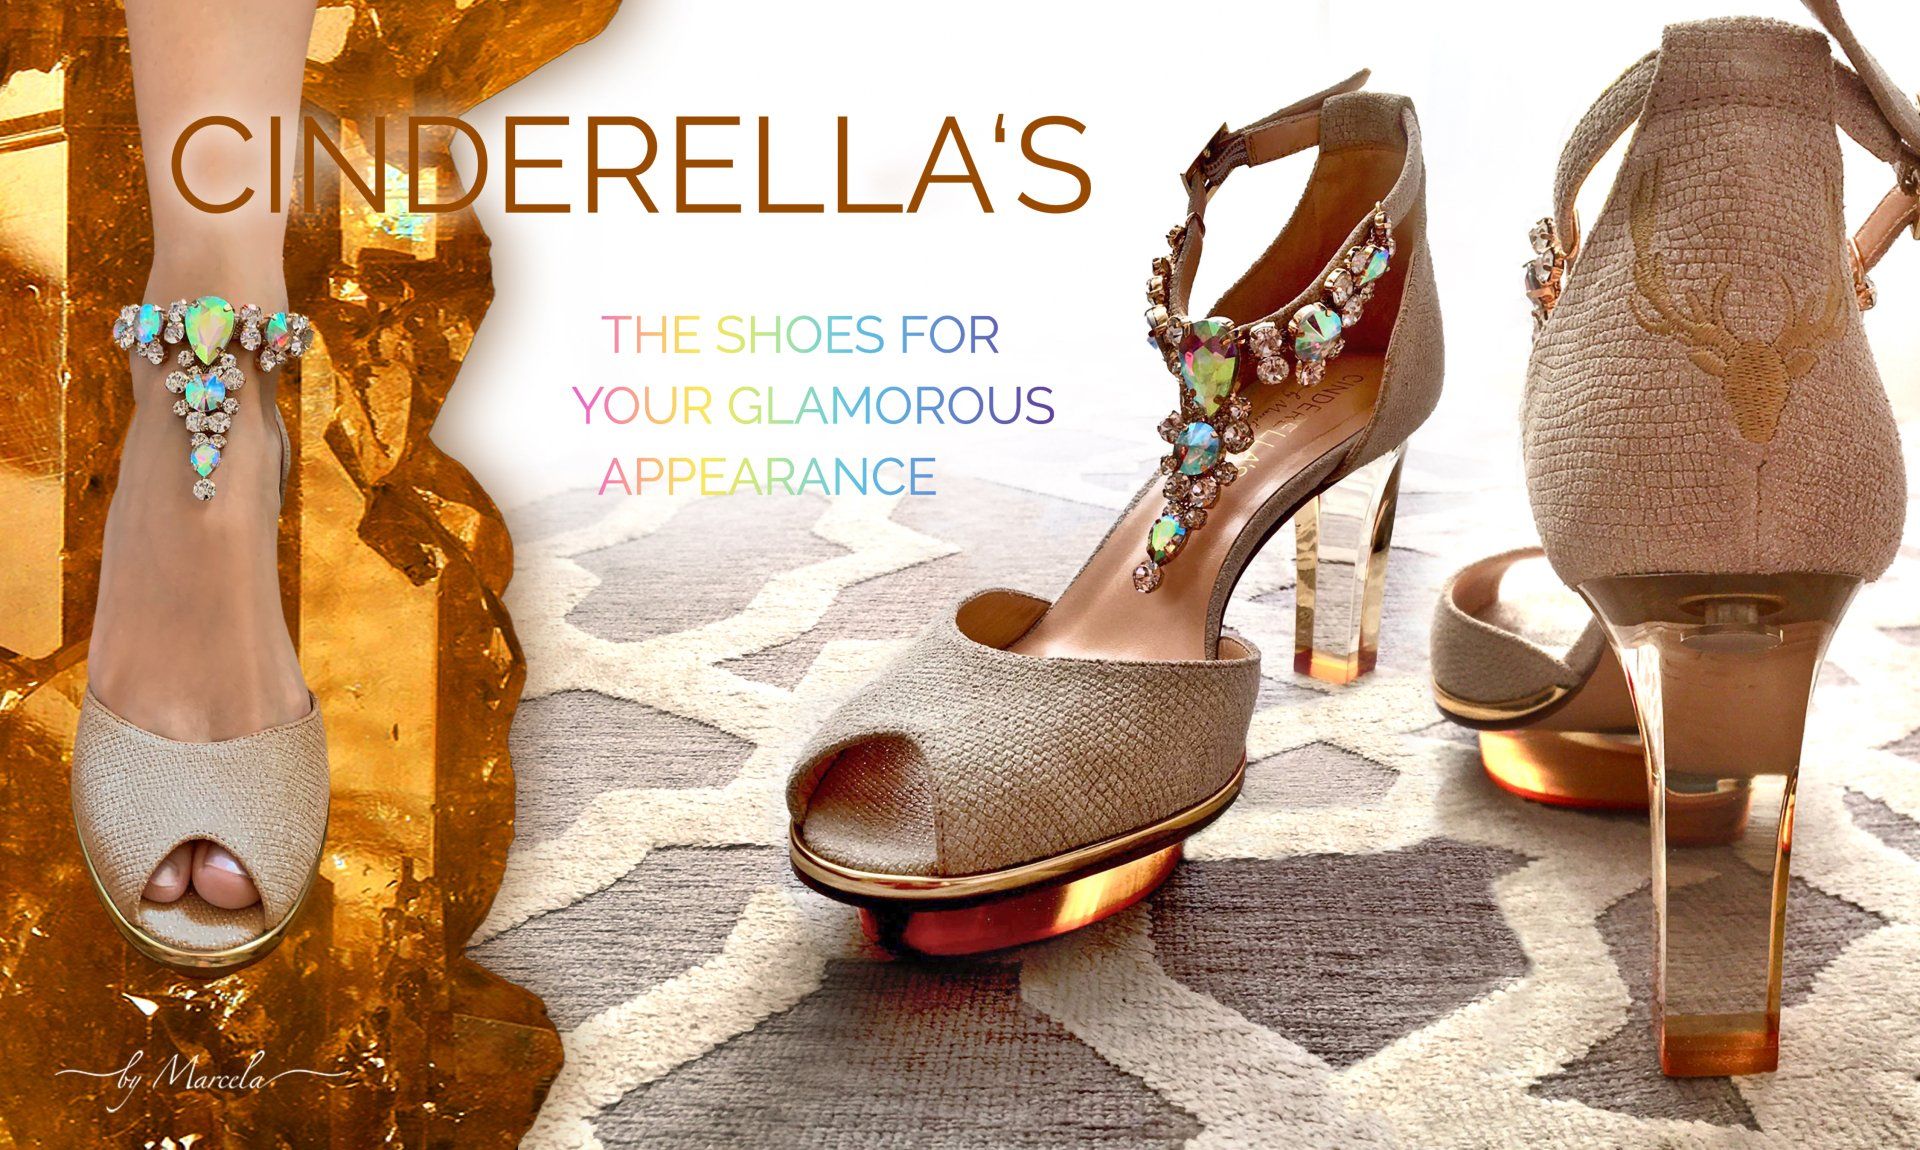 Creme gold Cinderella Dirndl Schuhe für Hochzeit mit transparentem high heel namens Goldis